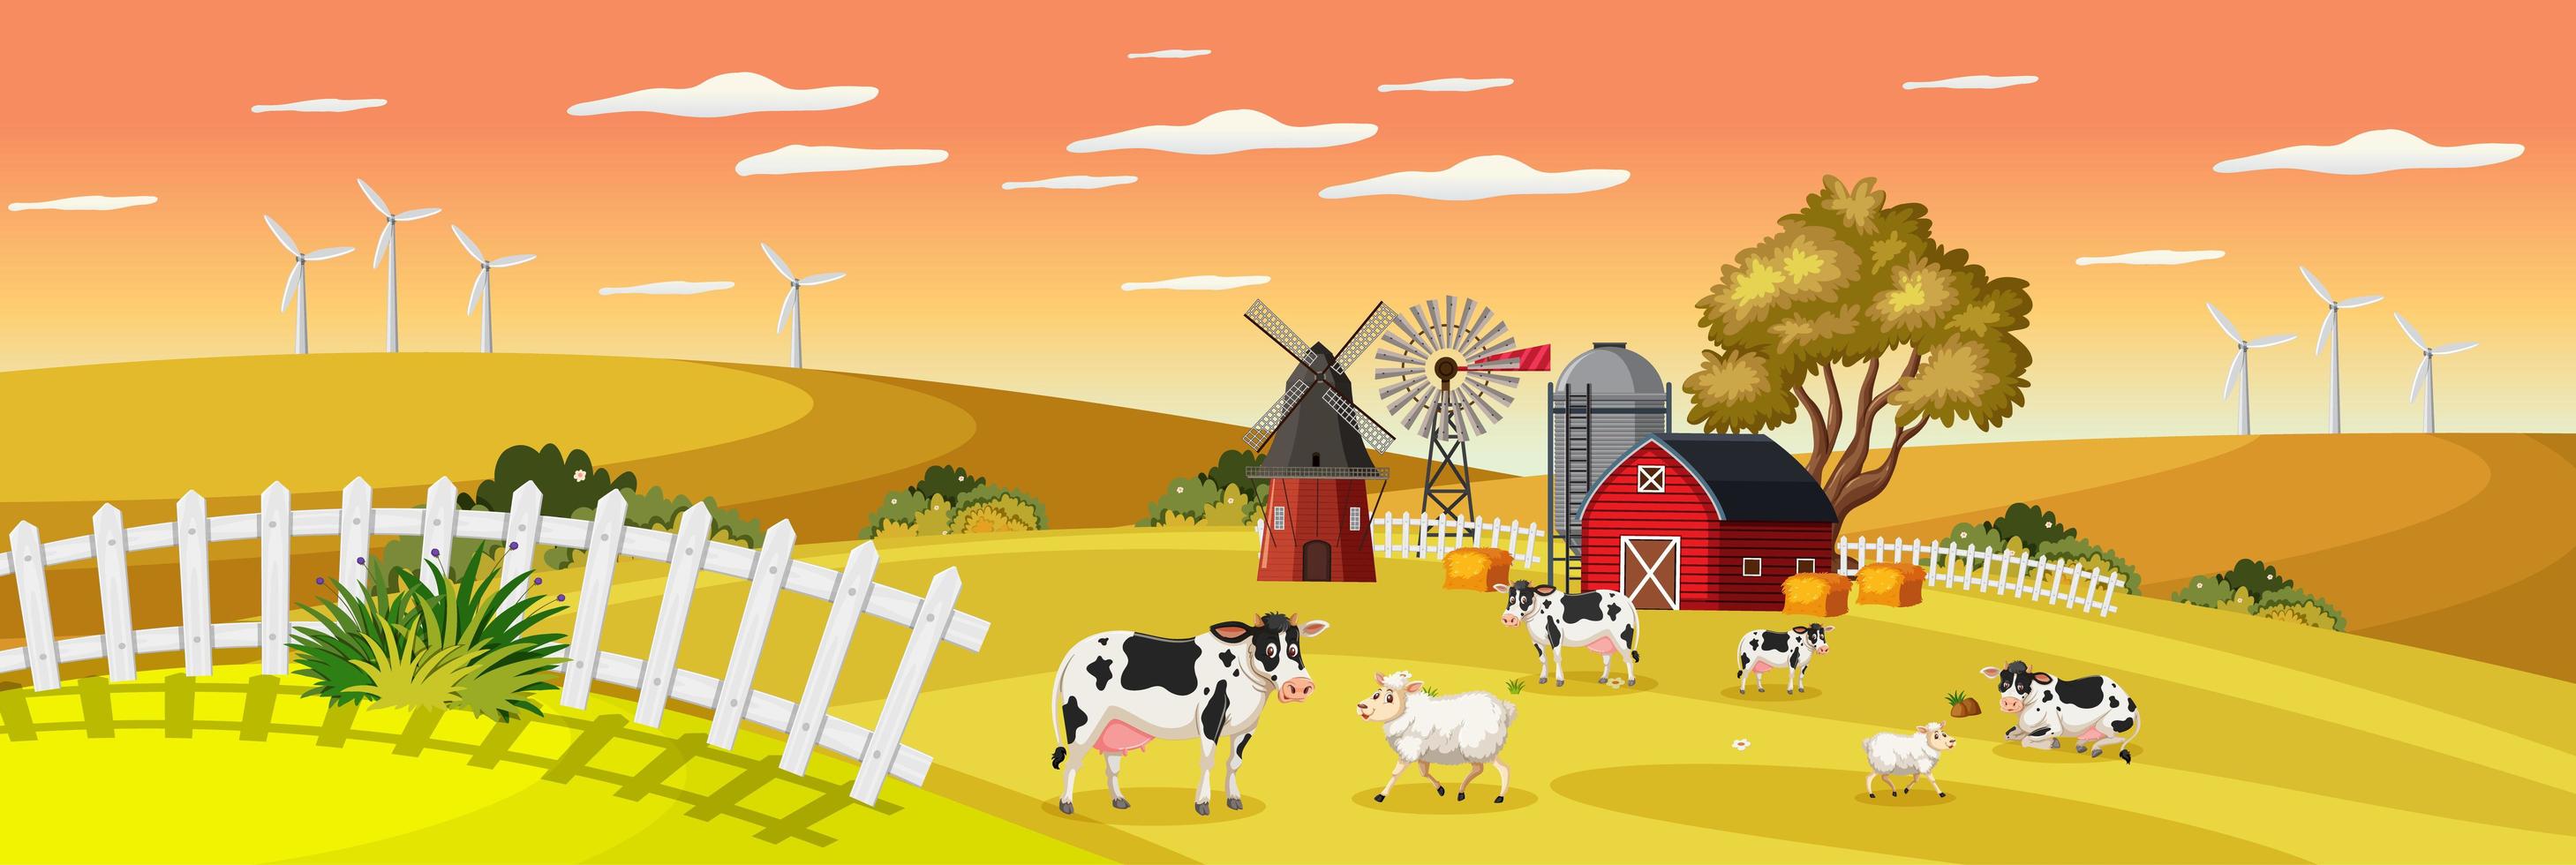 boerderijlandschap met dierenboerderij in veld en rode schuur in de herfstseizoen vector